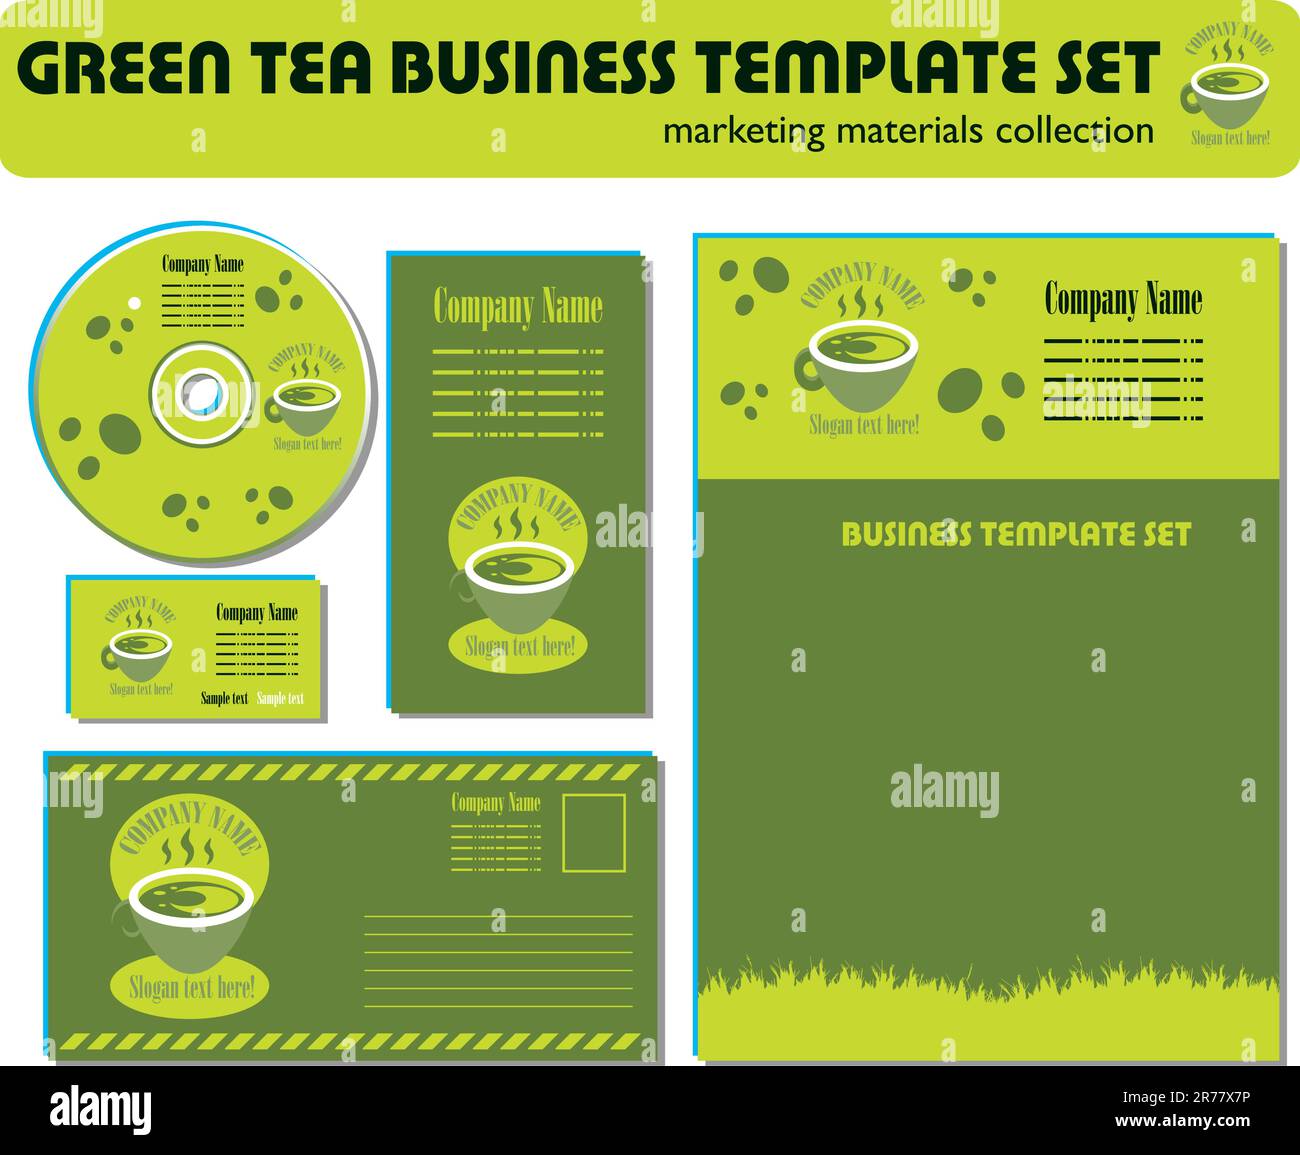 Materiali di marketing per il set di modelli per tè verde Illustrazione Vettoriale